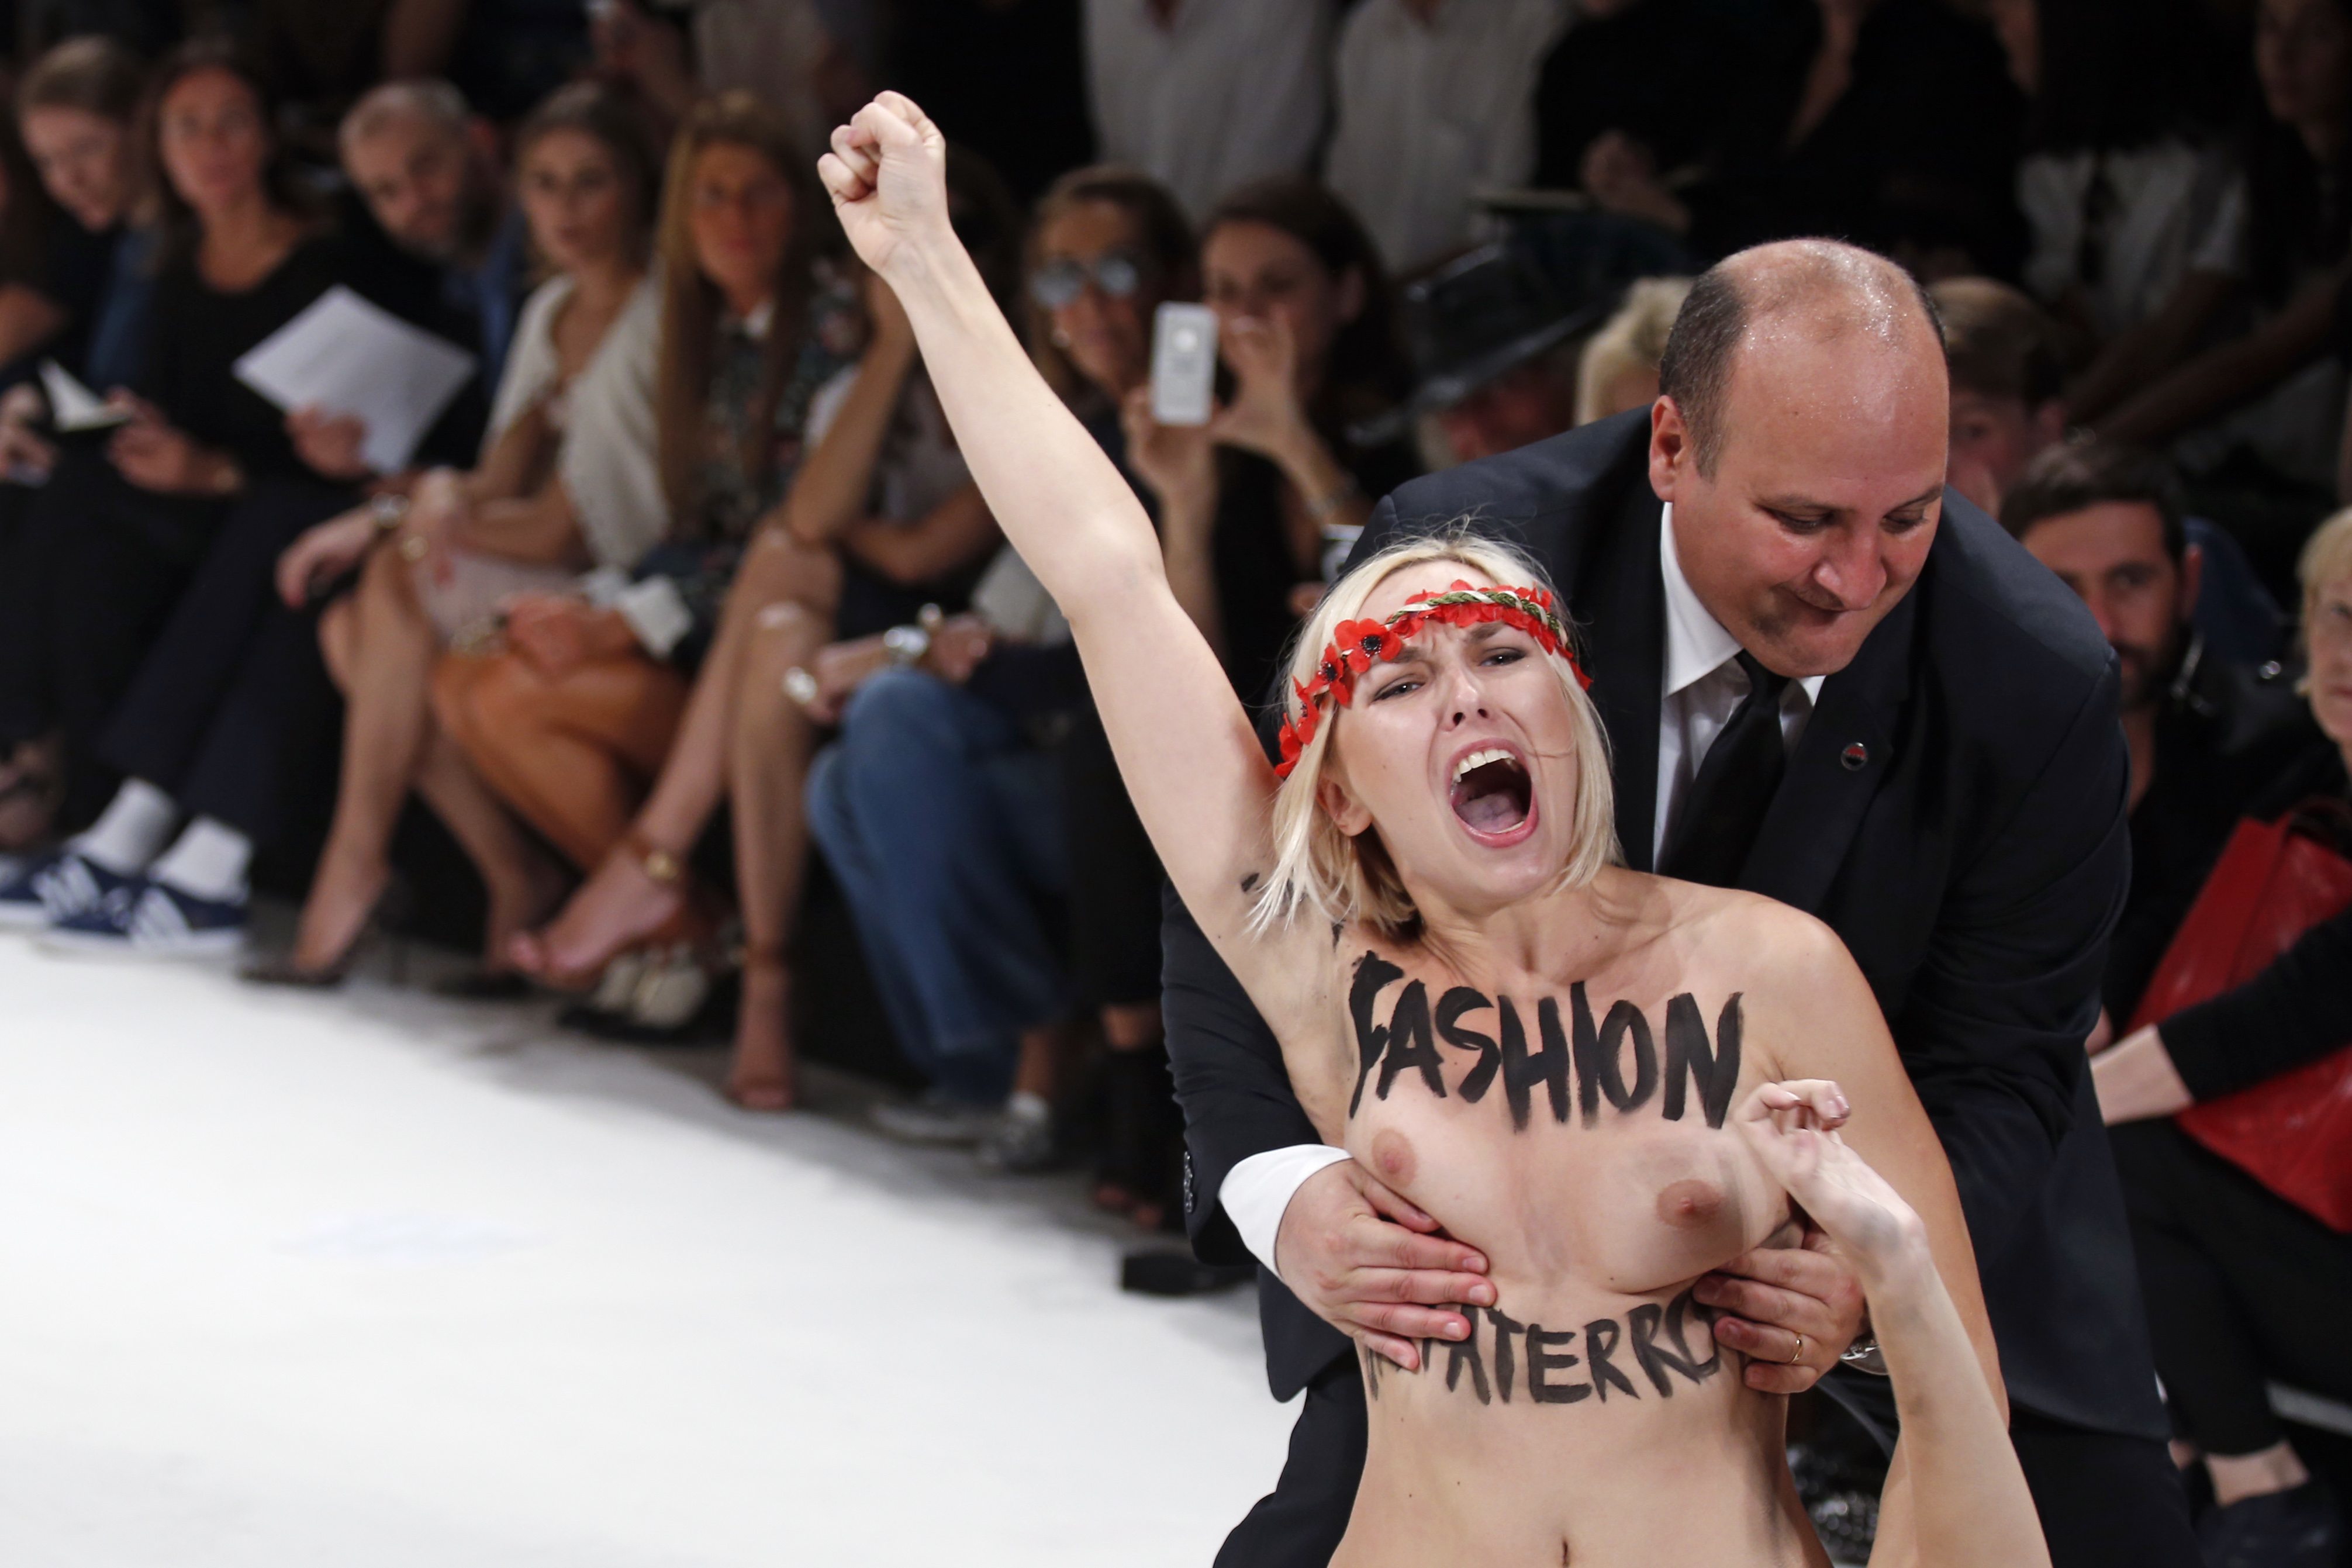 Ξύλο στην πασαρέλα! Οι γυμνόστηθες Femen εισέβαλαν σε επίδειξη μόδας! (ΦΩΤΟ και VIDEO)